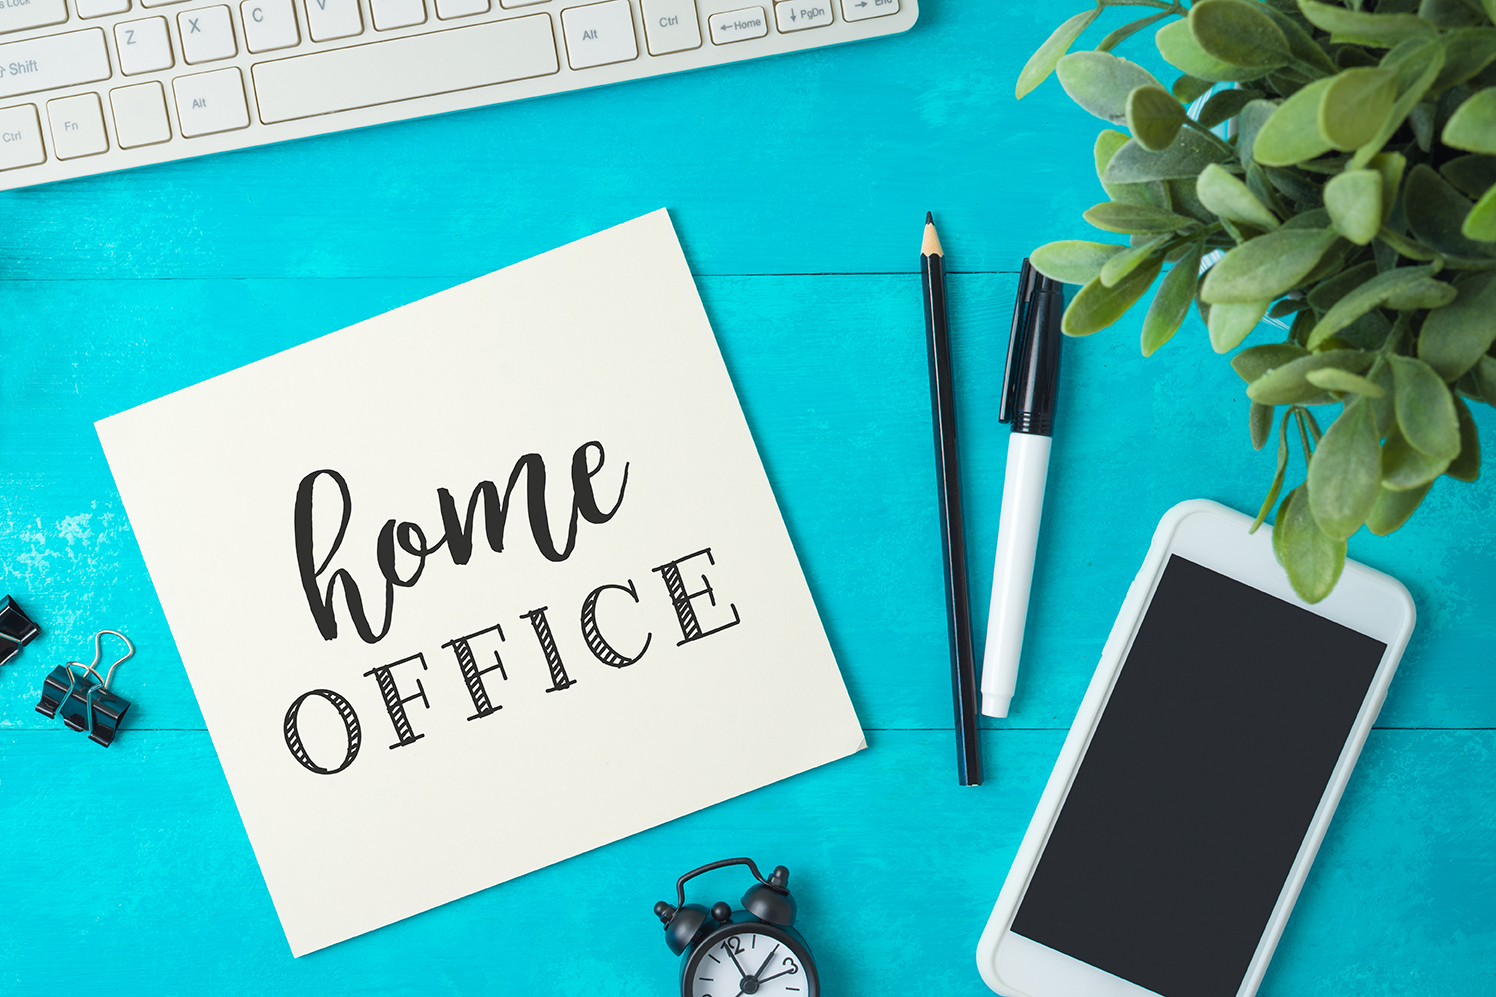 Teclado de computadora, celular, plumas y una nota de home office sobre escritorio y 5 consejos para incrementar la productividad en home office